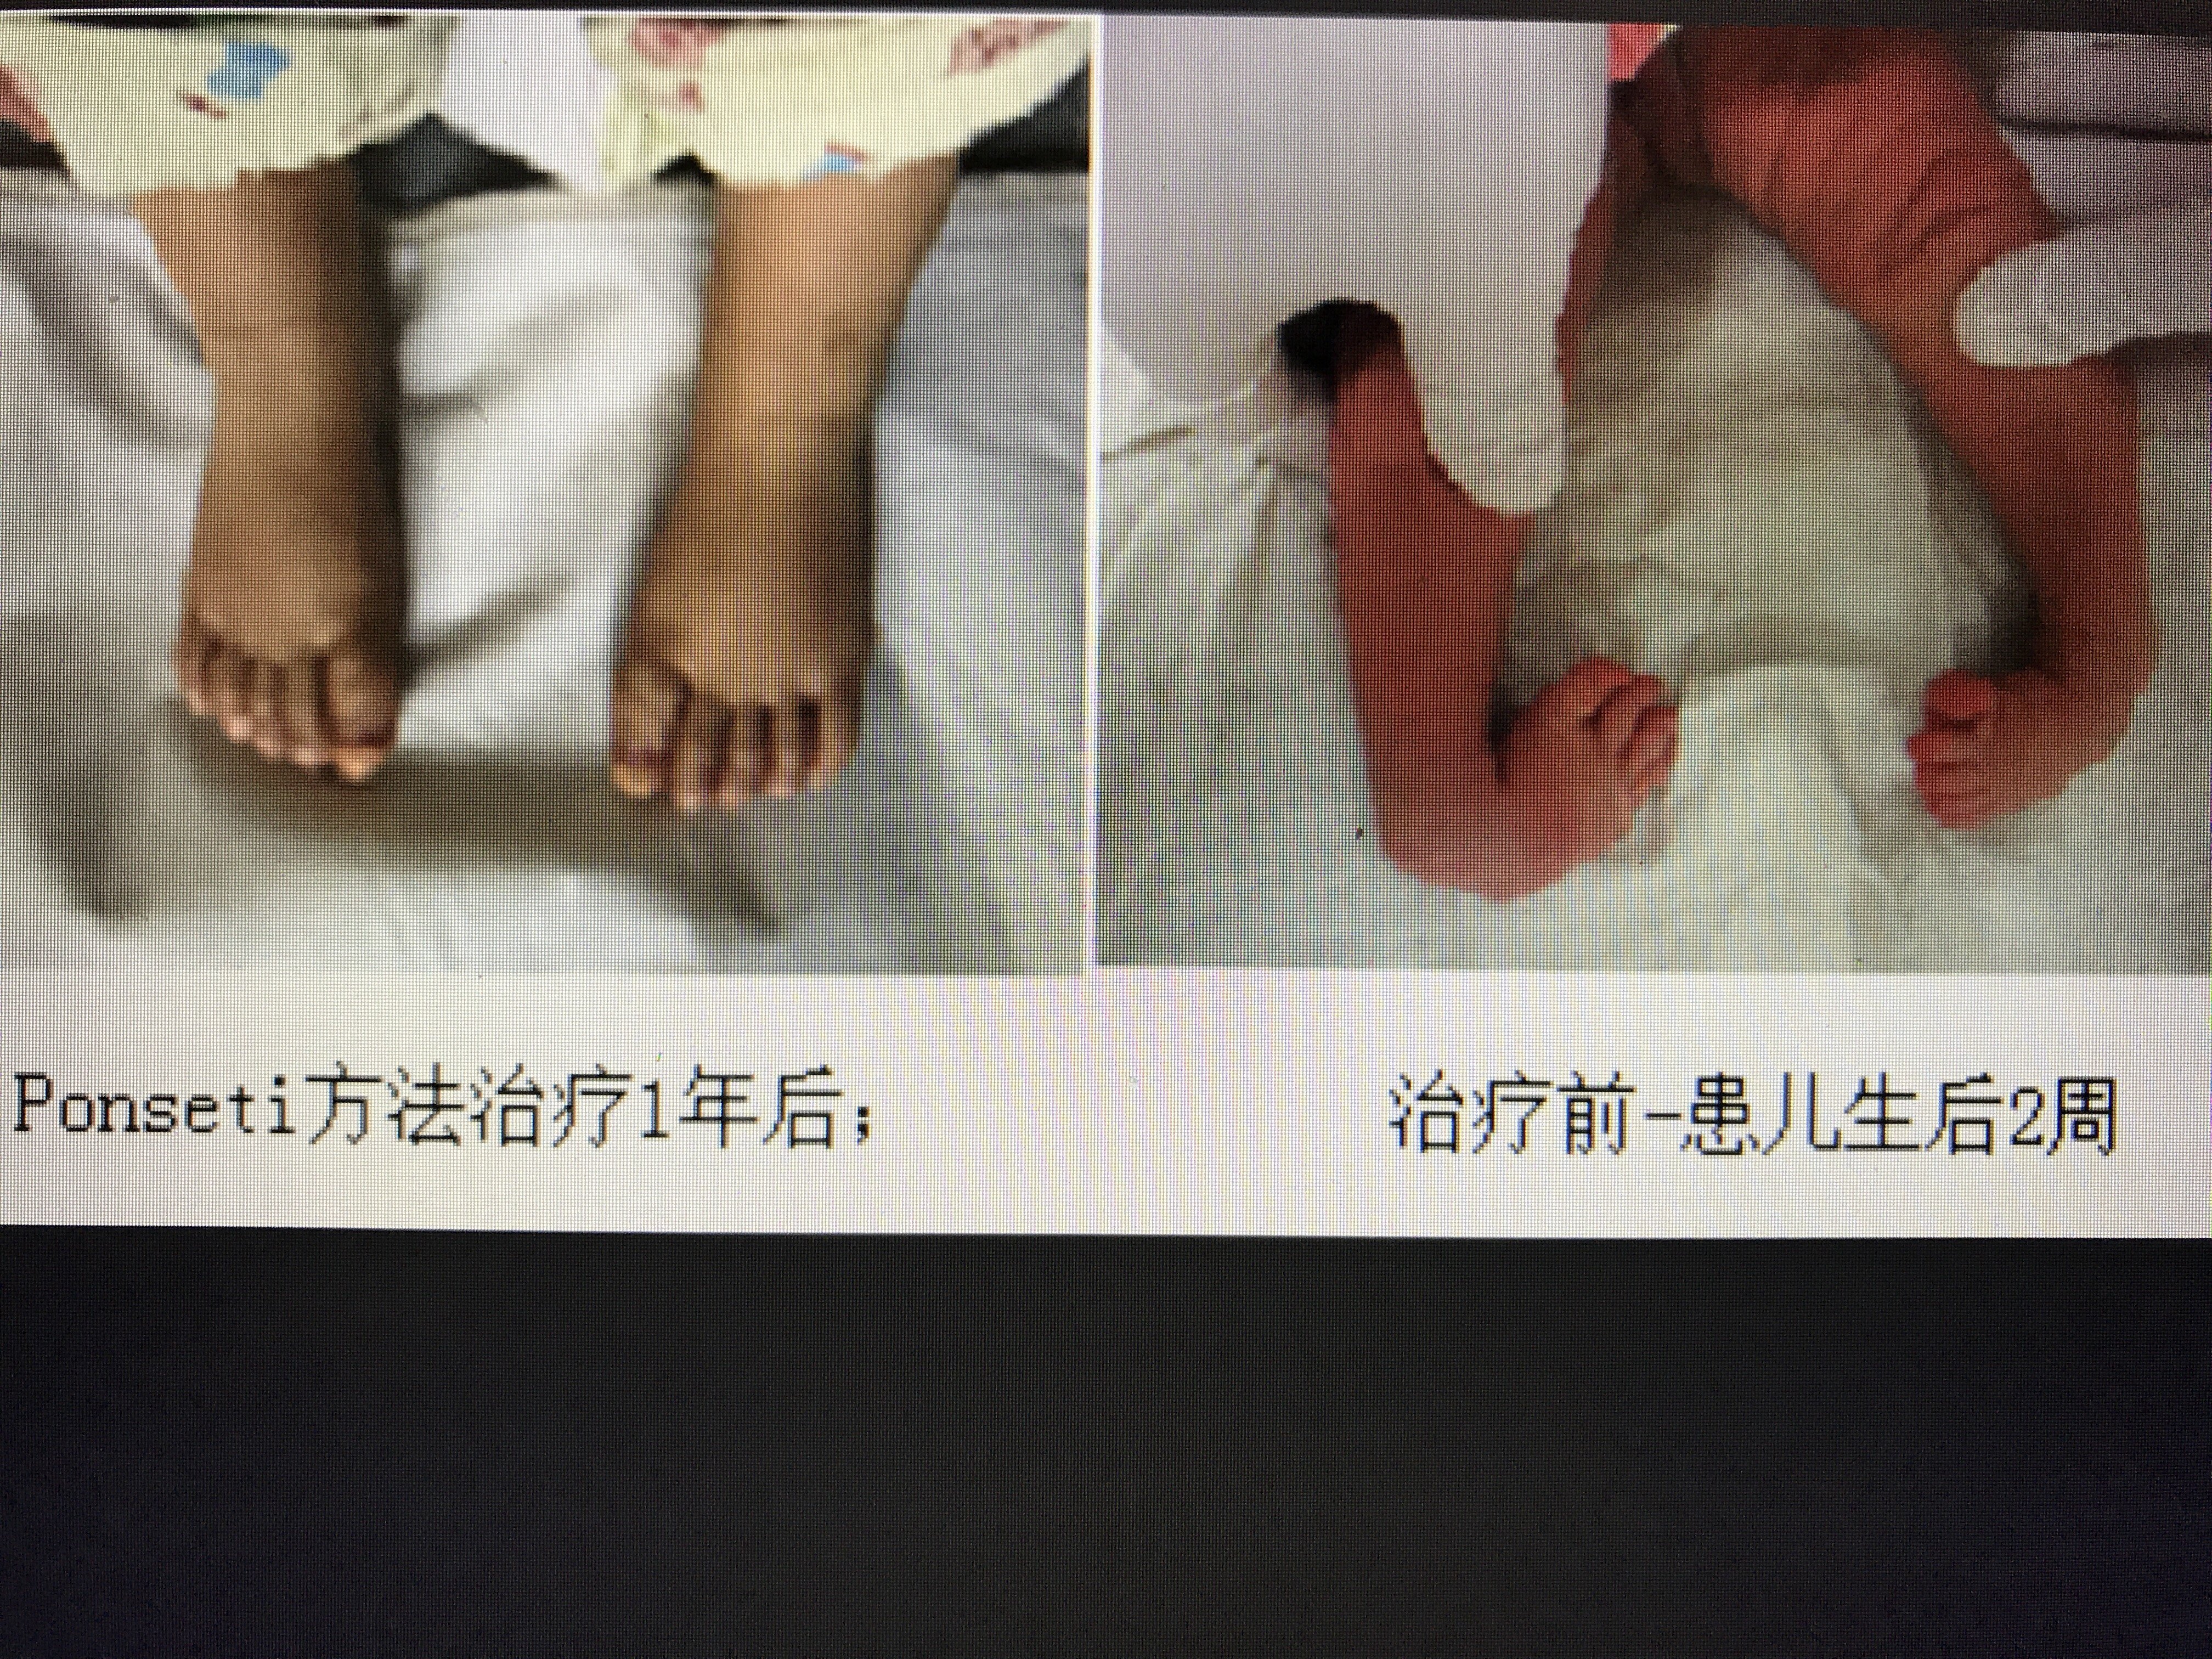 足踝专家胡霞主任科普:如何尽早发现和治疗婴幼儿马蹄足内翻？ - 哔哩哔哩